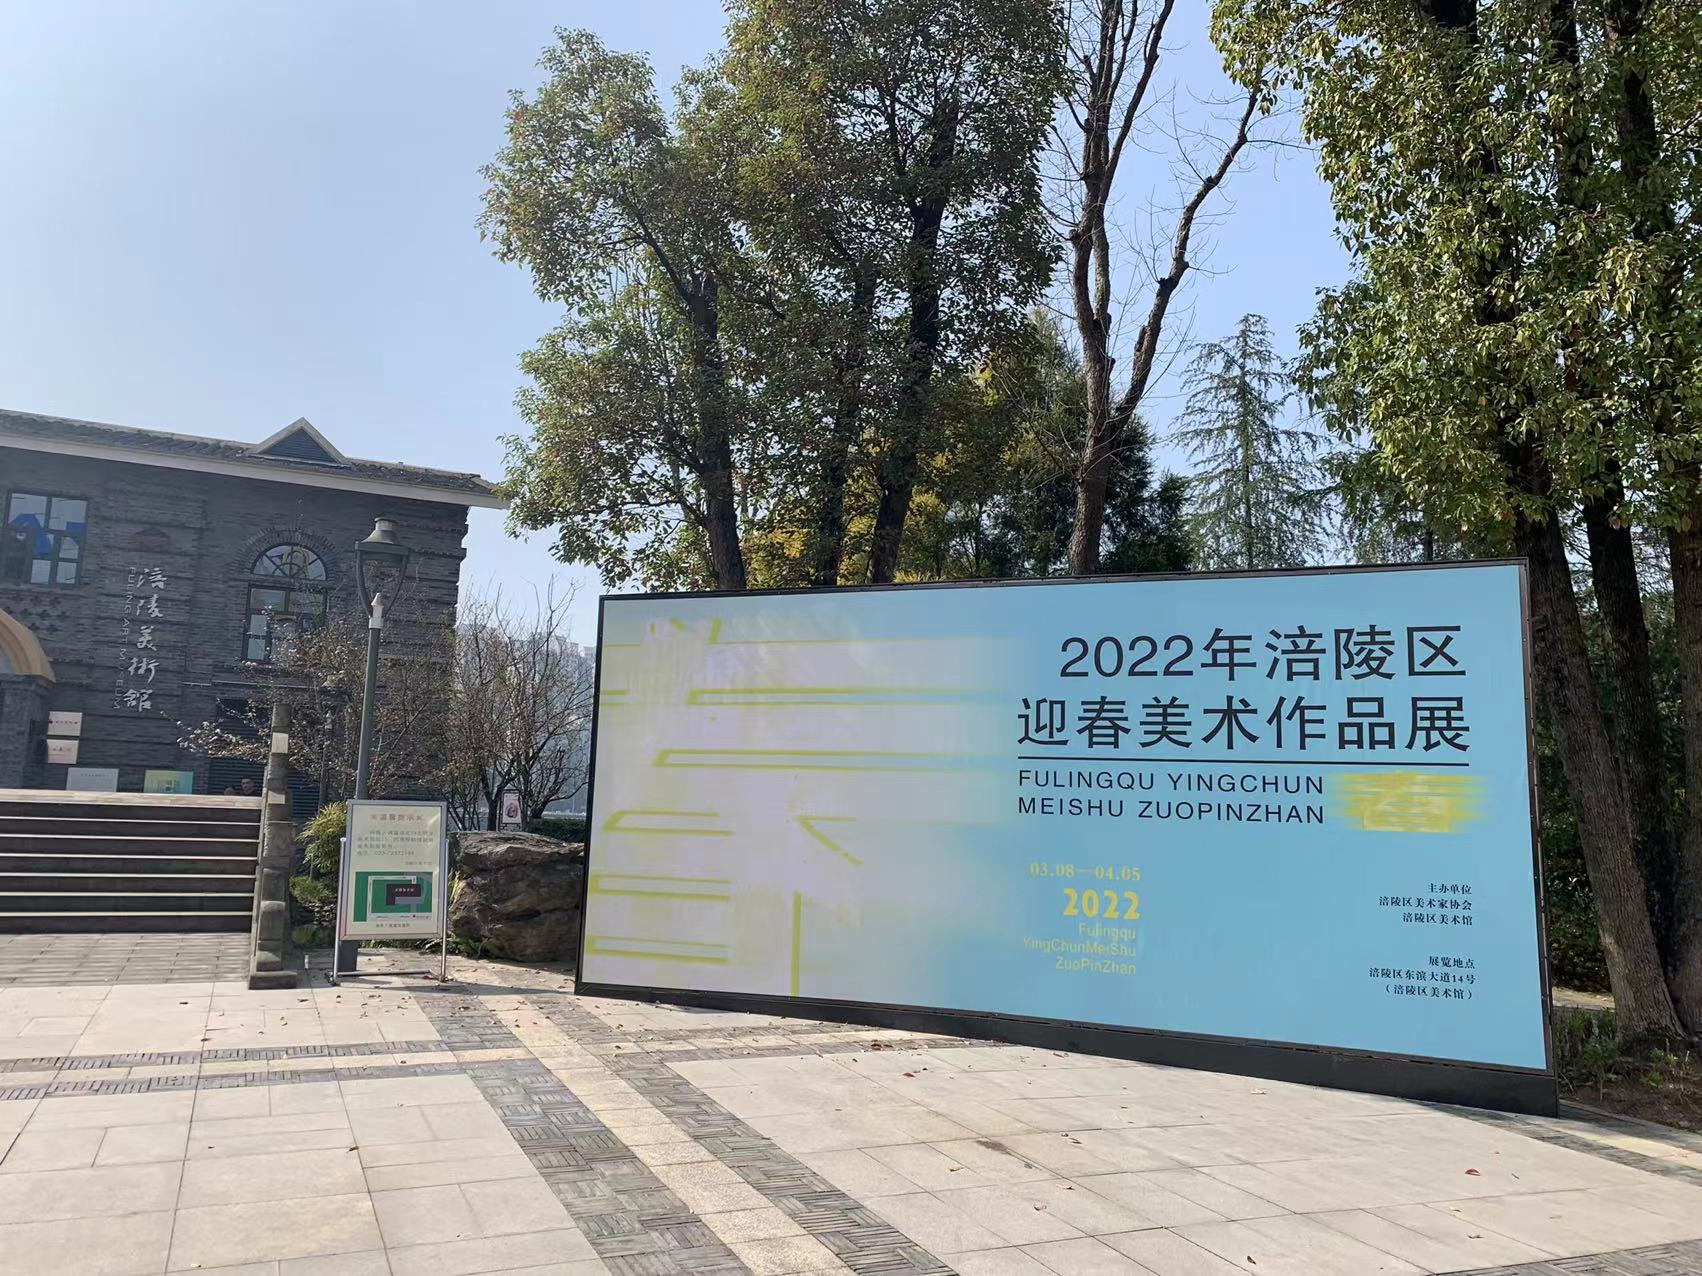 “2022涪陵区迎春美术作品展”正在涪陵美术馆开展